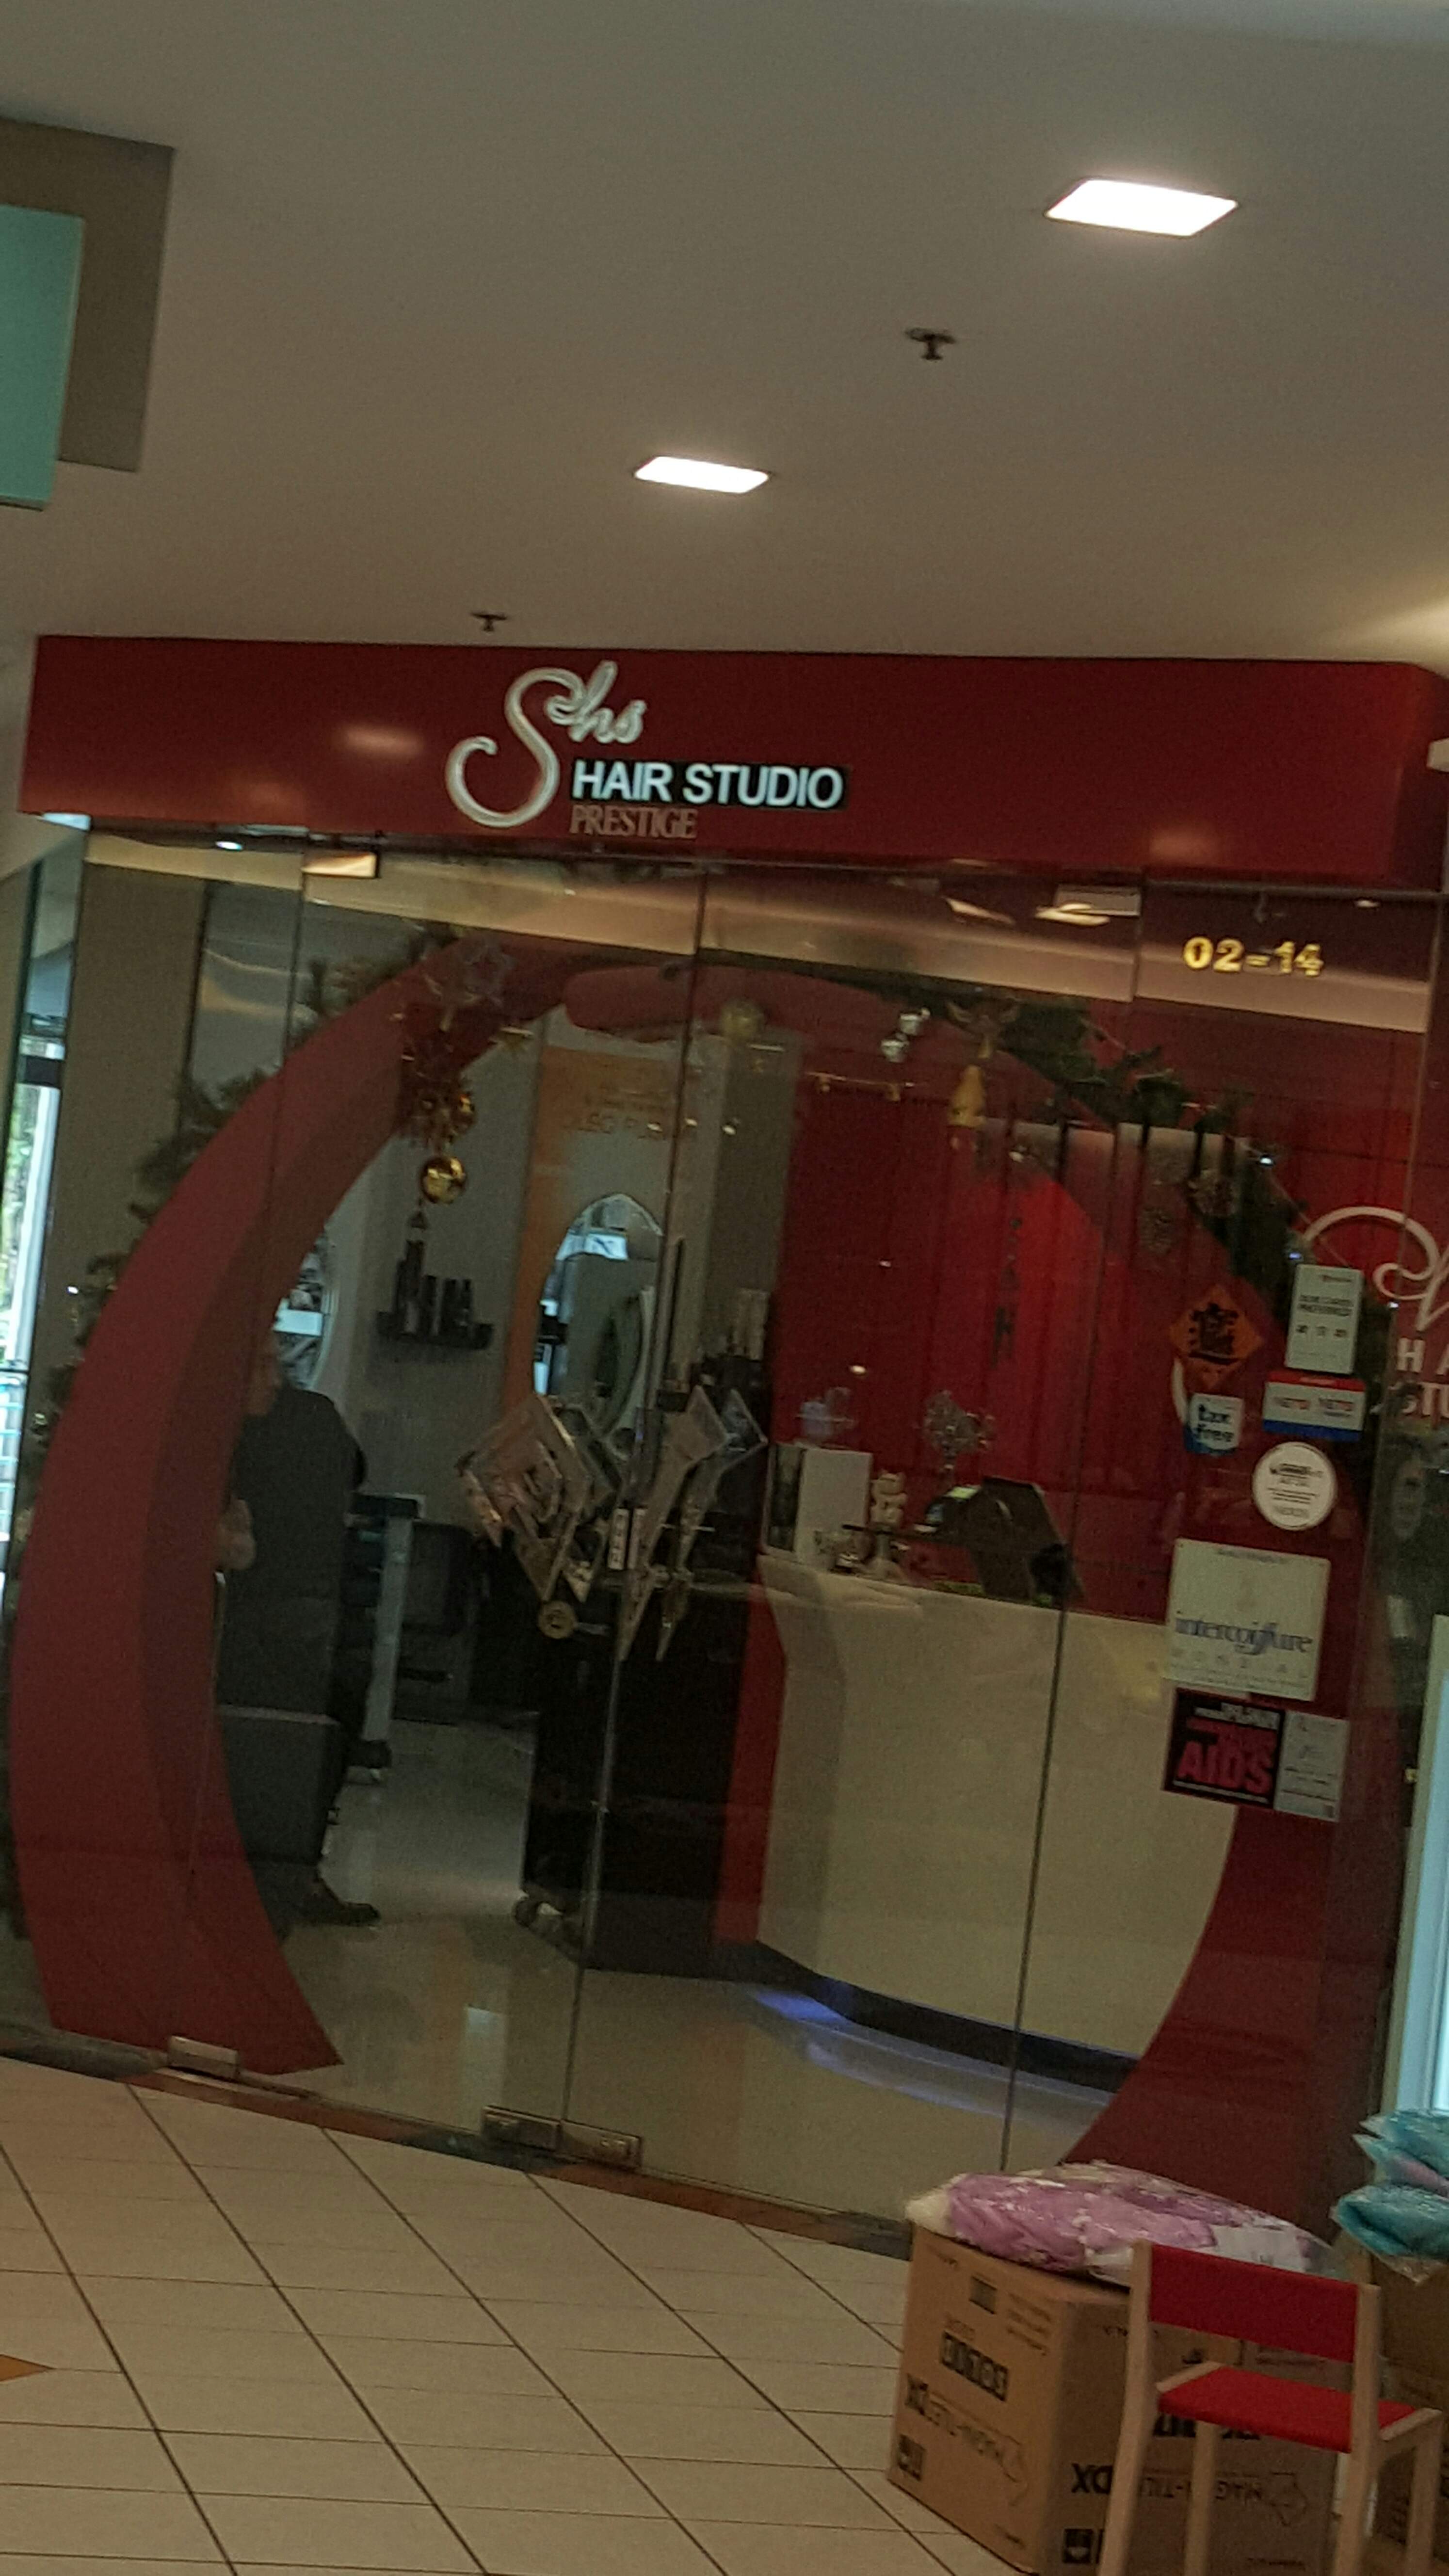 Singapore Service - Hair+Salon - Shs Hair Studio | Nestia